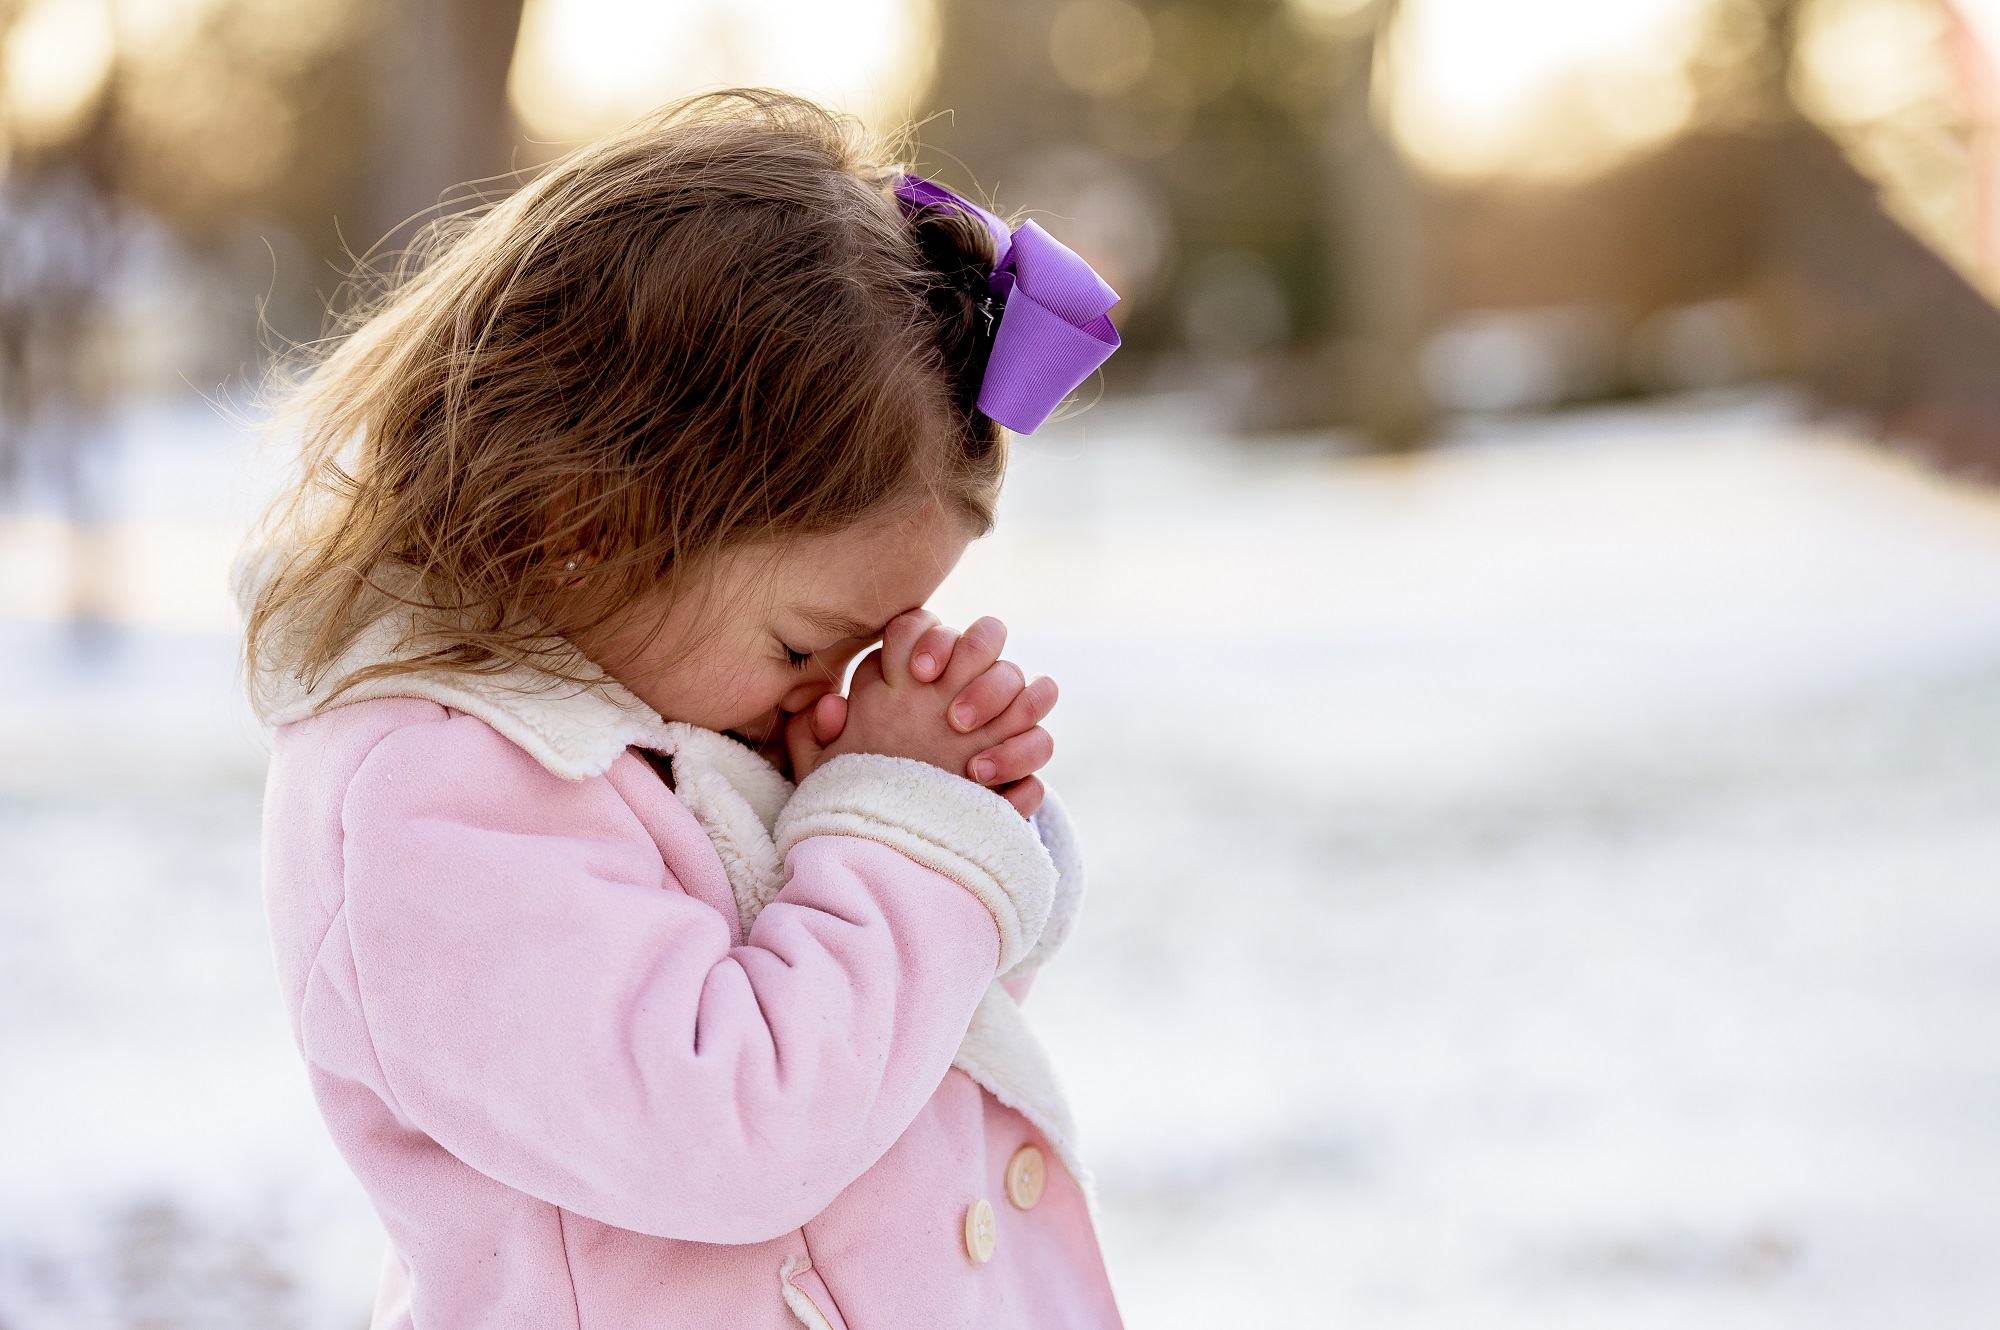 Menina loira rezando em um jardim coberto de neve sob a luz do sol a uma distância borrada